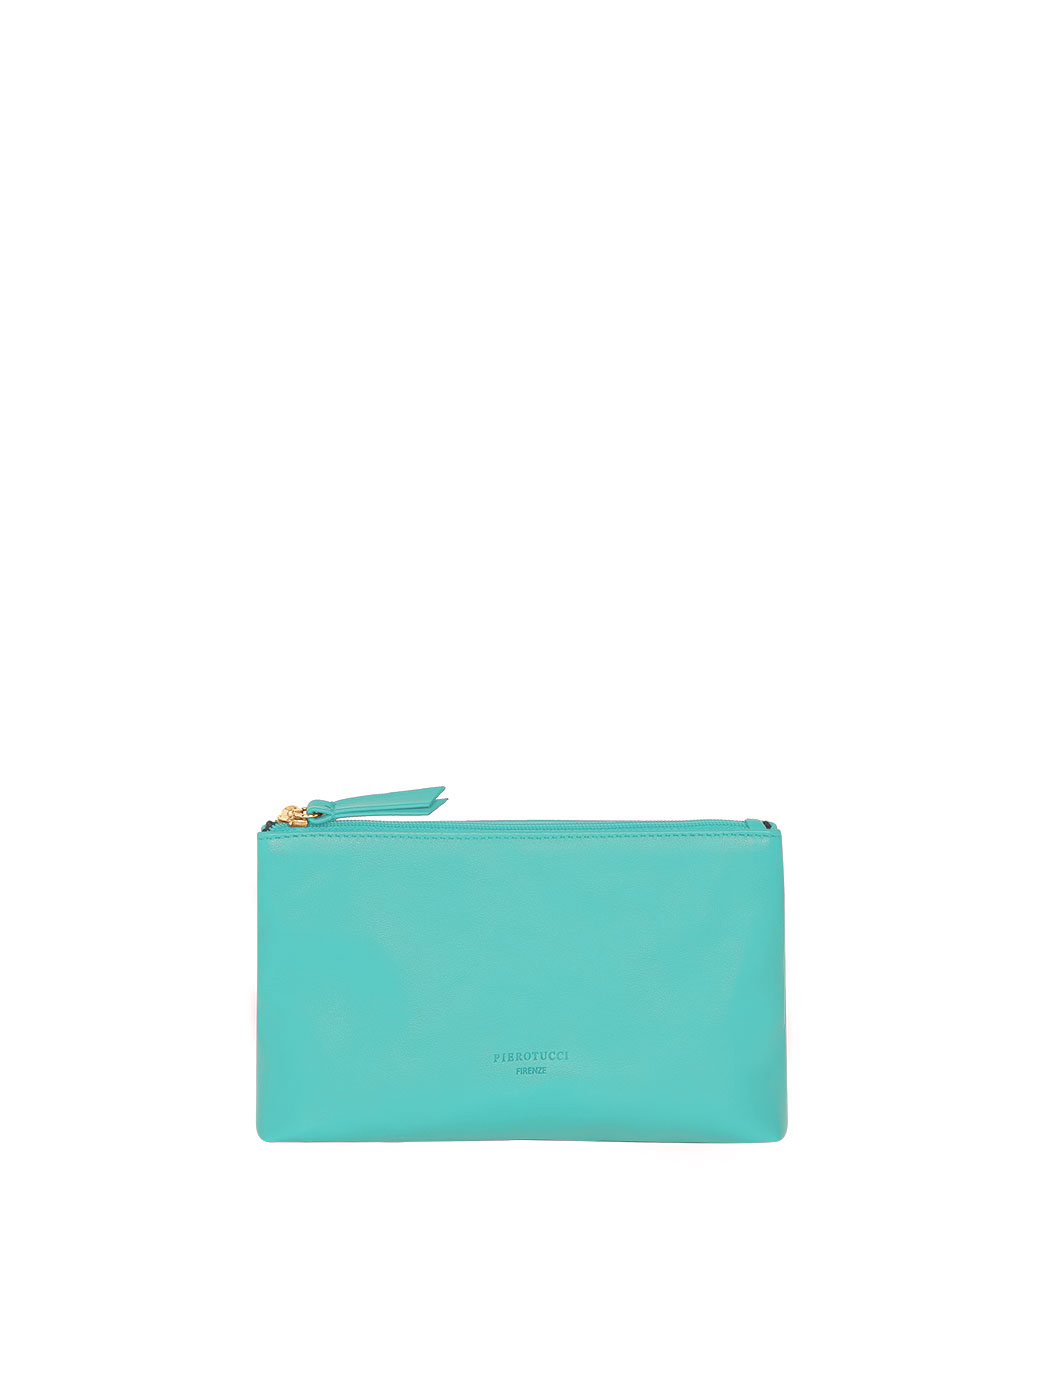 Small Beauty Case Cosmetic Bag Aqua Blue